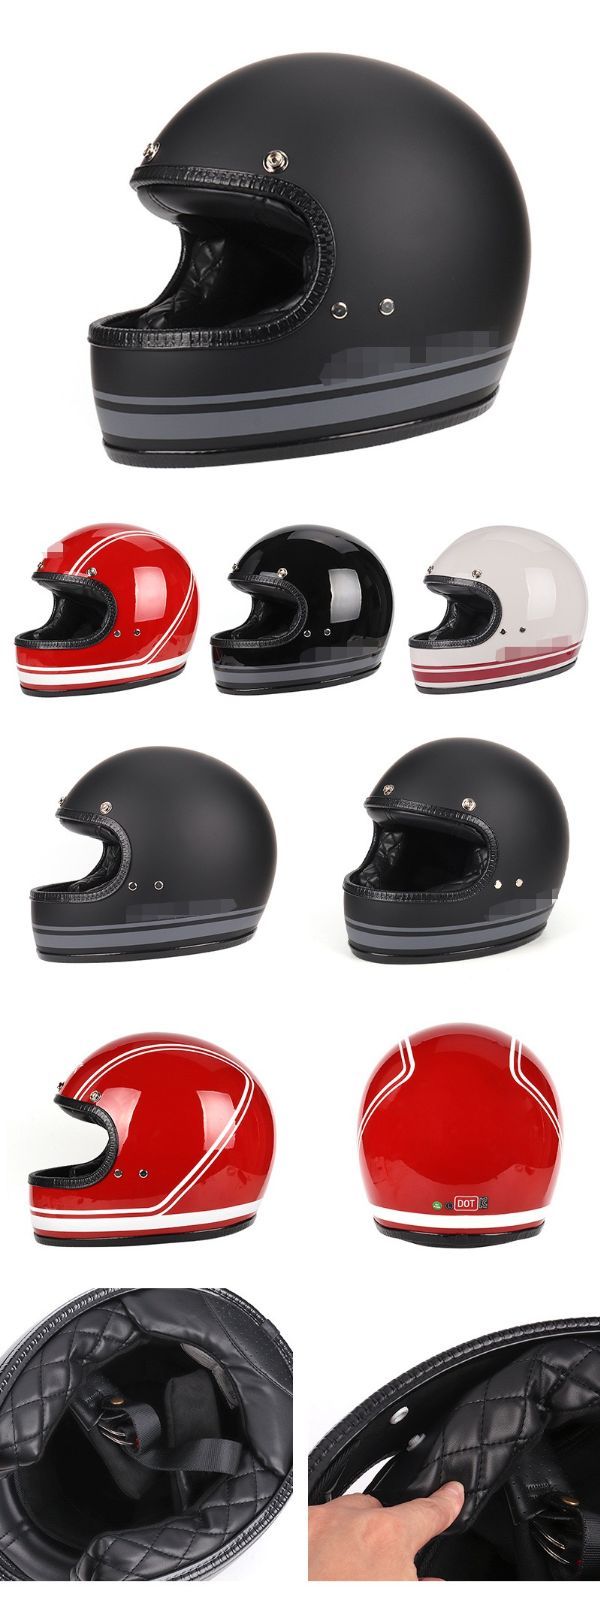 高品質レトロフルフェイスヘルメットDOT大きいサイズあり認証新品